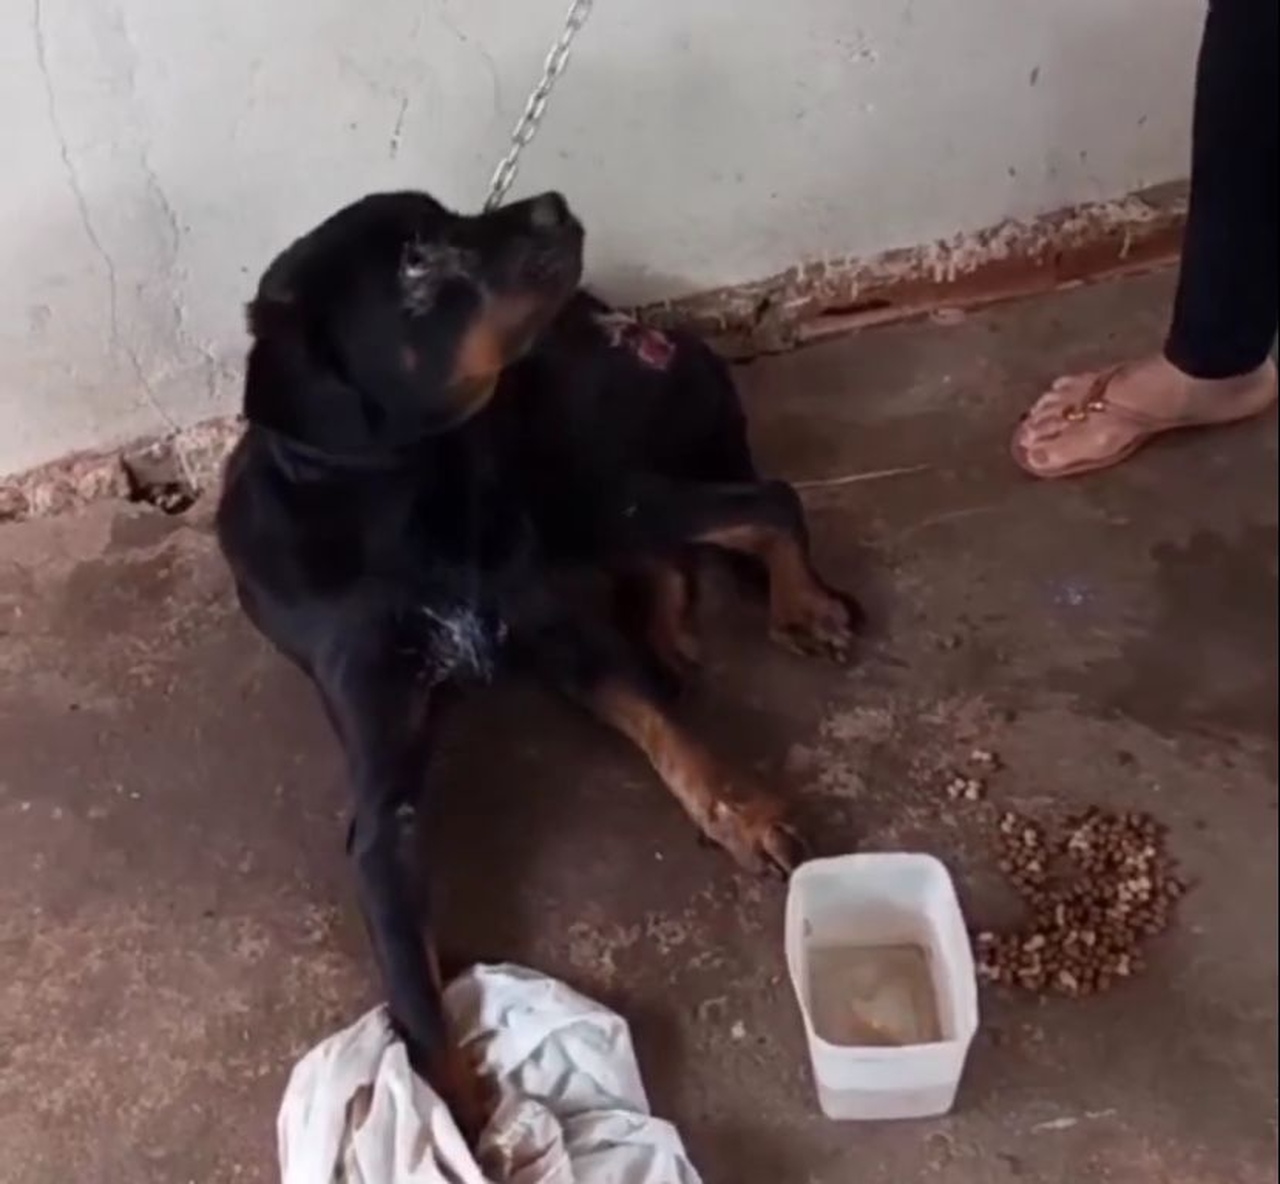 ABSURDO! Pastora é denunciada por maus-tratos a animais no setor Taquari, em Palmas; veja vídeo